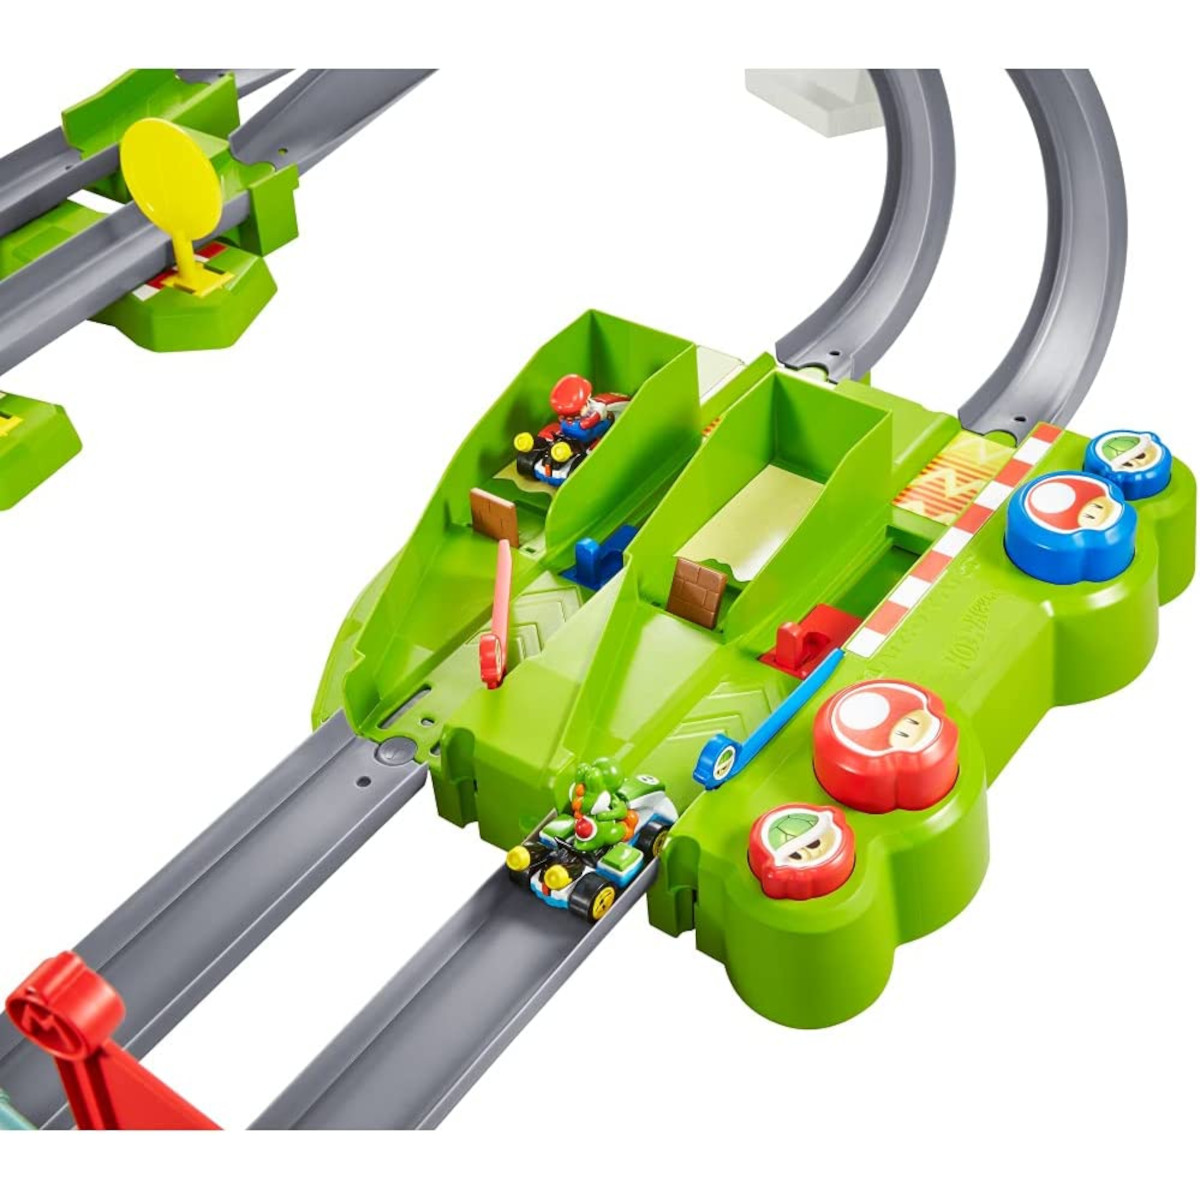 Spielzeugautos Kart 2 MATTEL Rennbahn Mario - Spielzeugrennbahn Hot inkl. Wheels